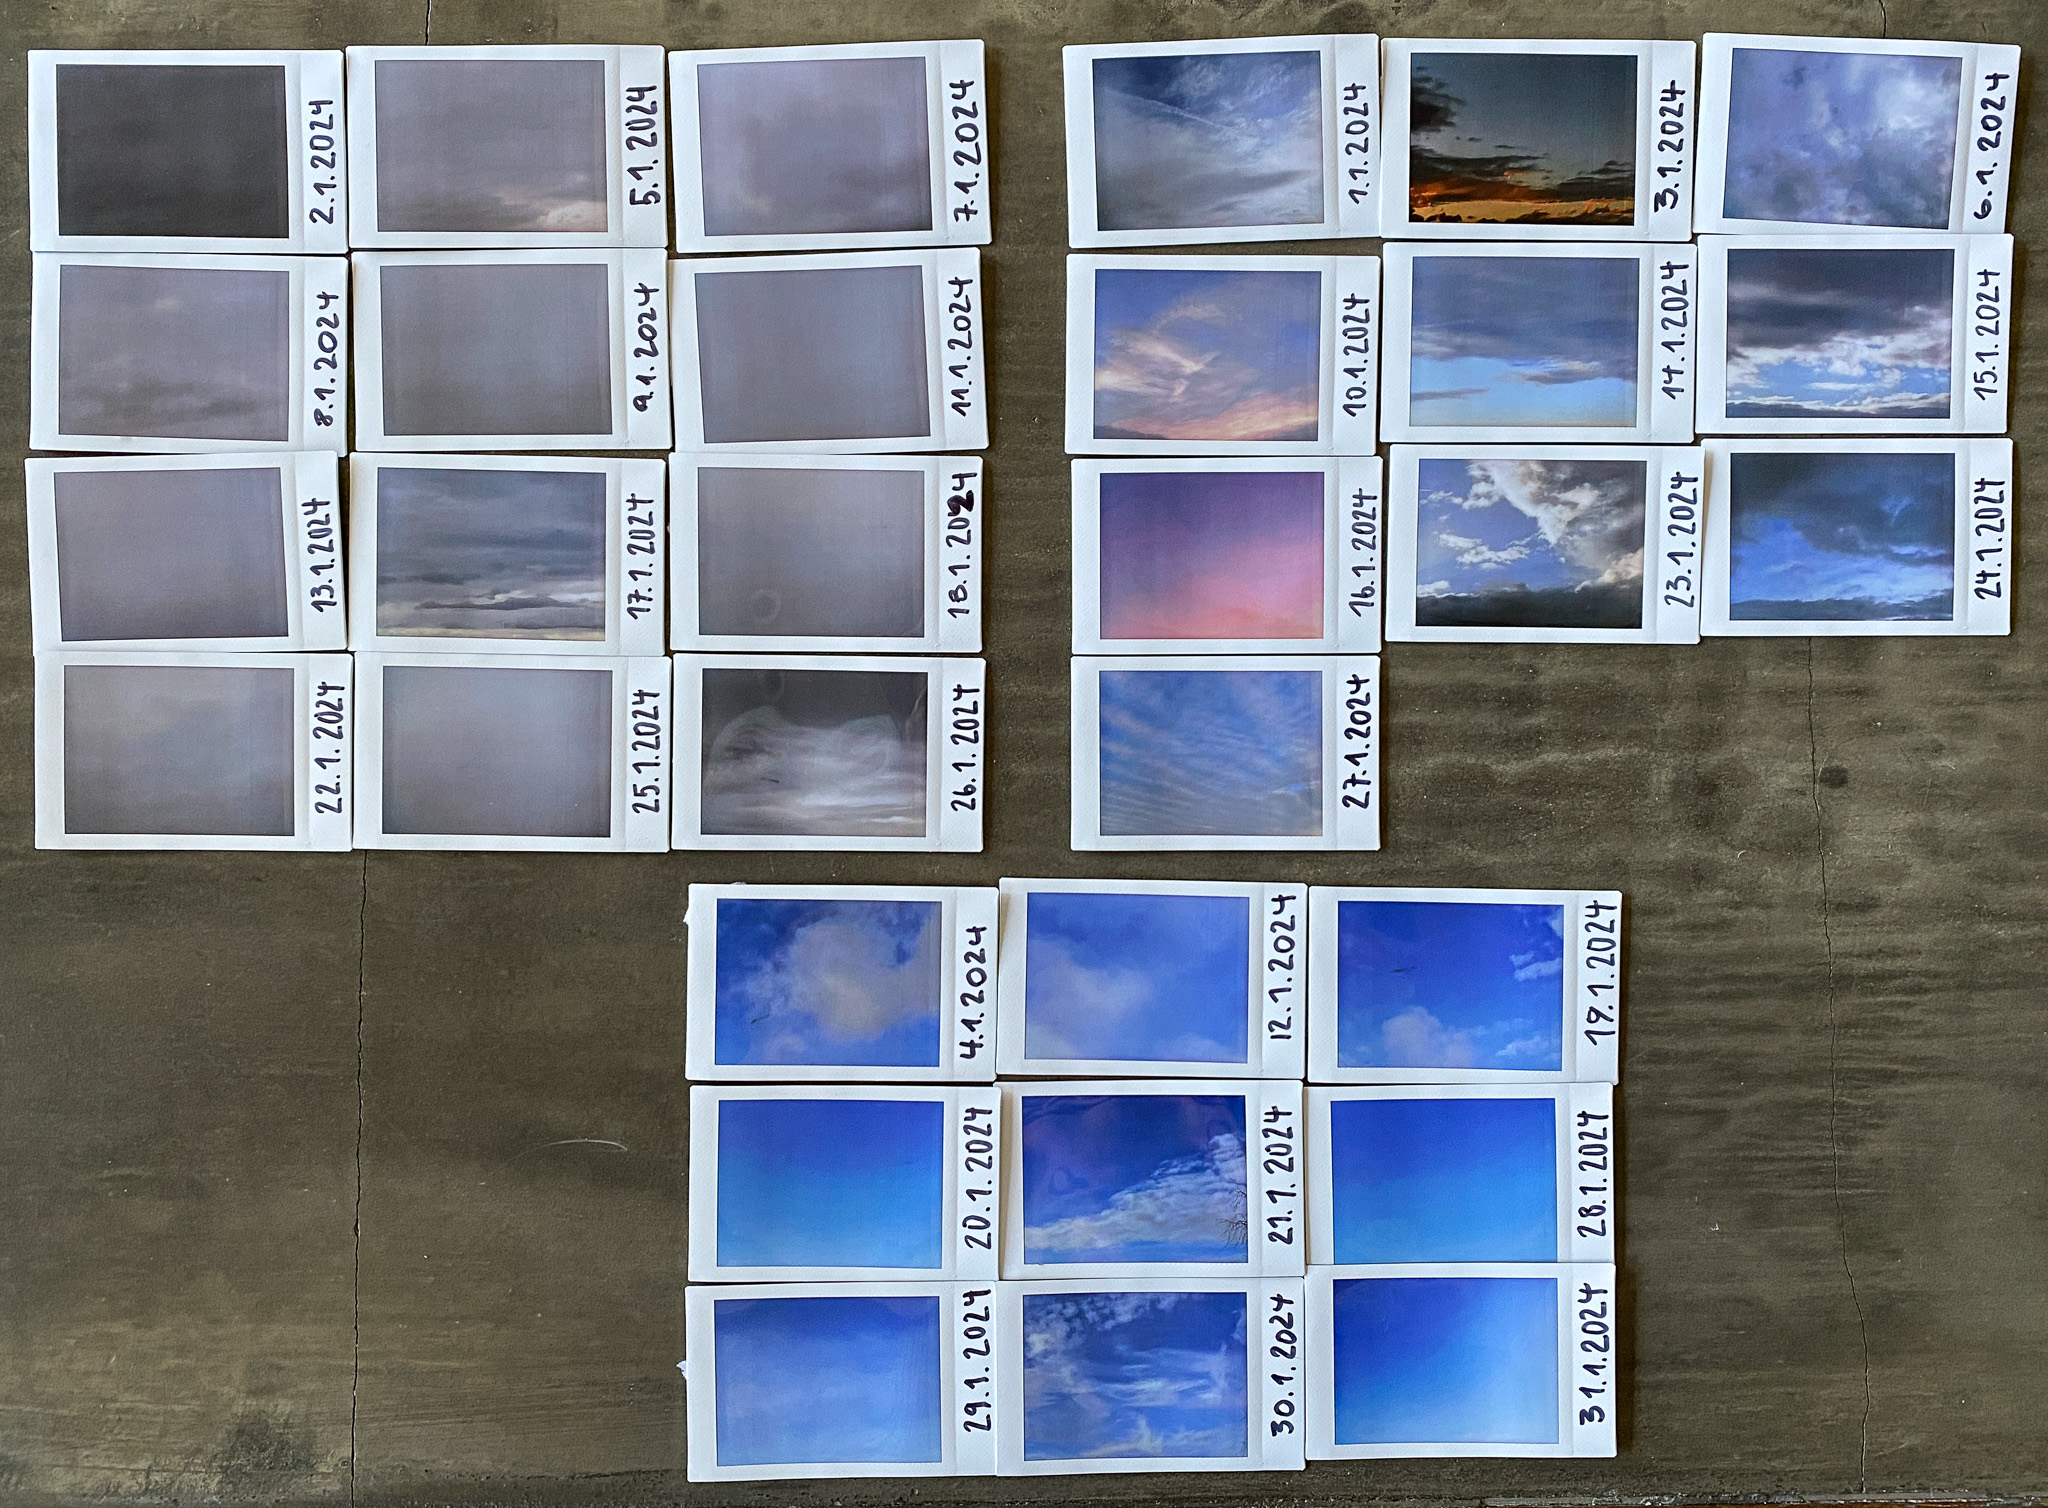 Anordnung nach Lichtstimmung der Polaroidaufnahmen vom Himmel im Januar